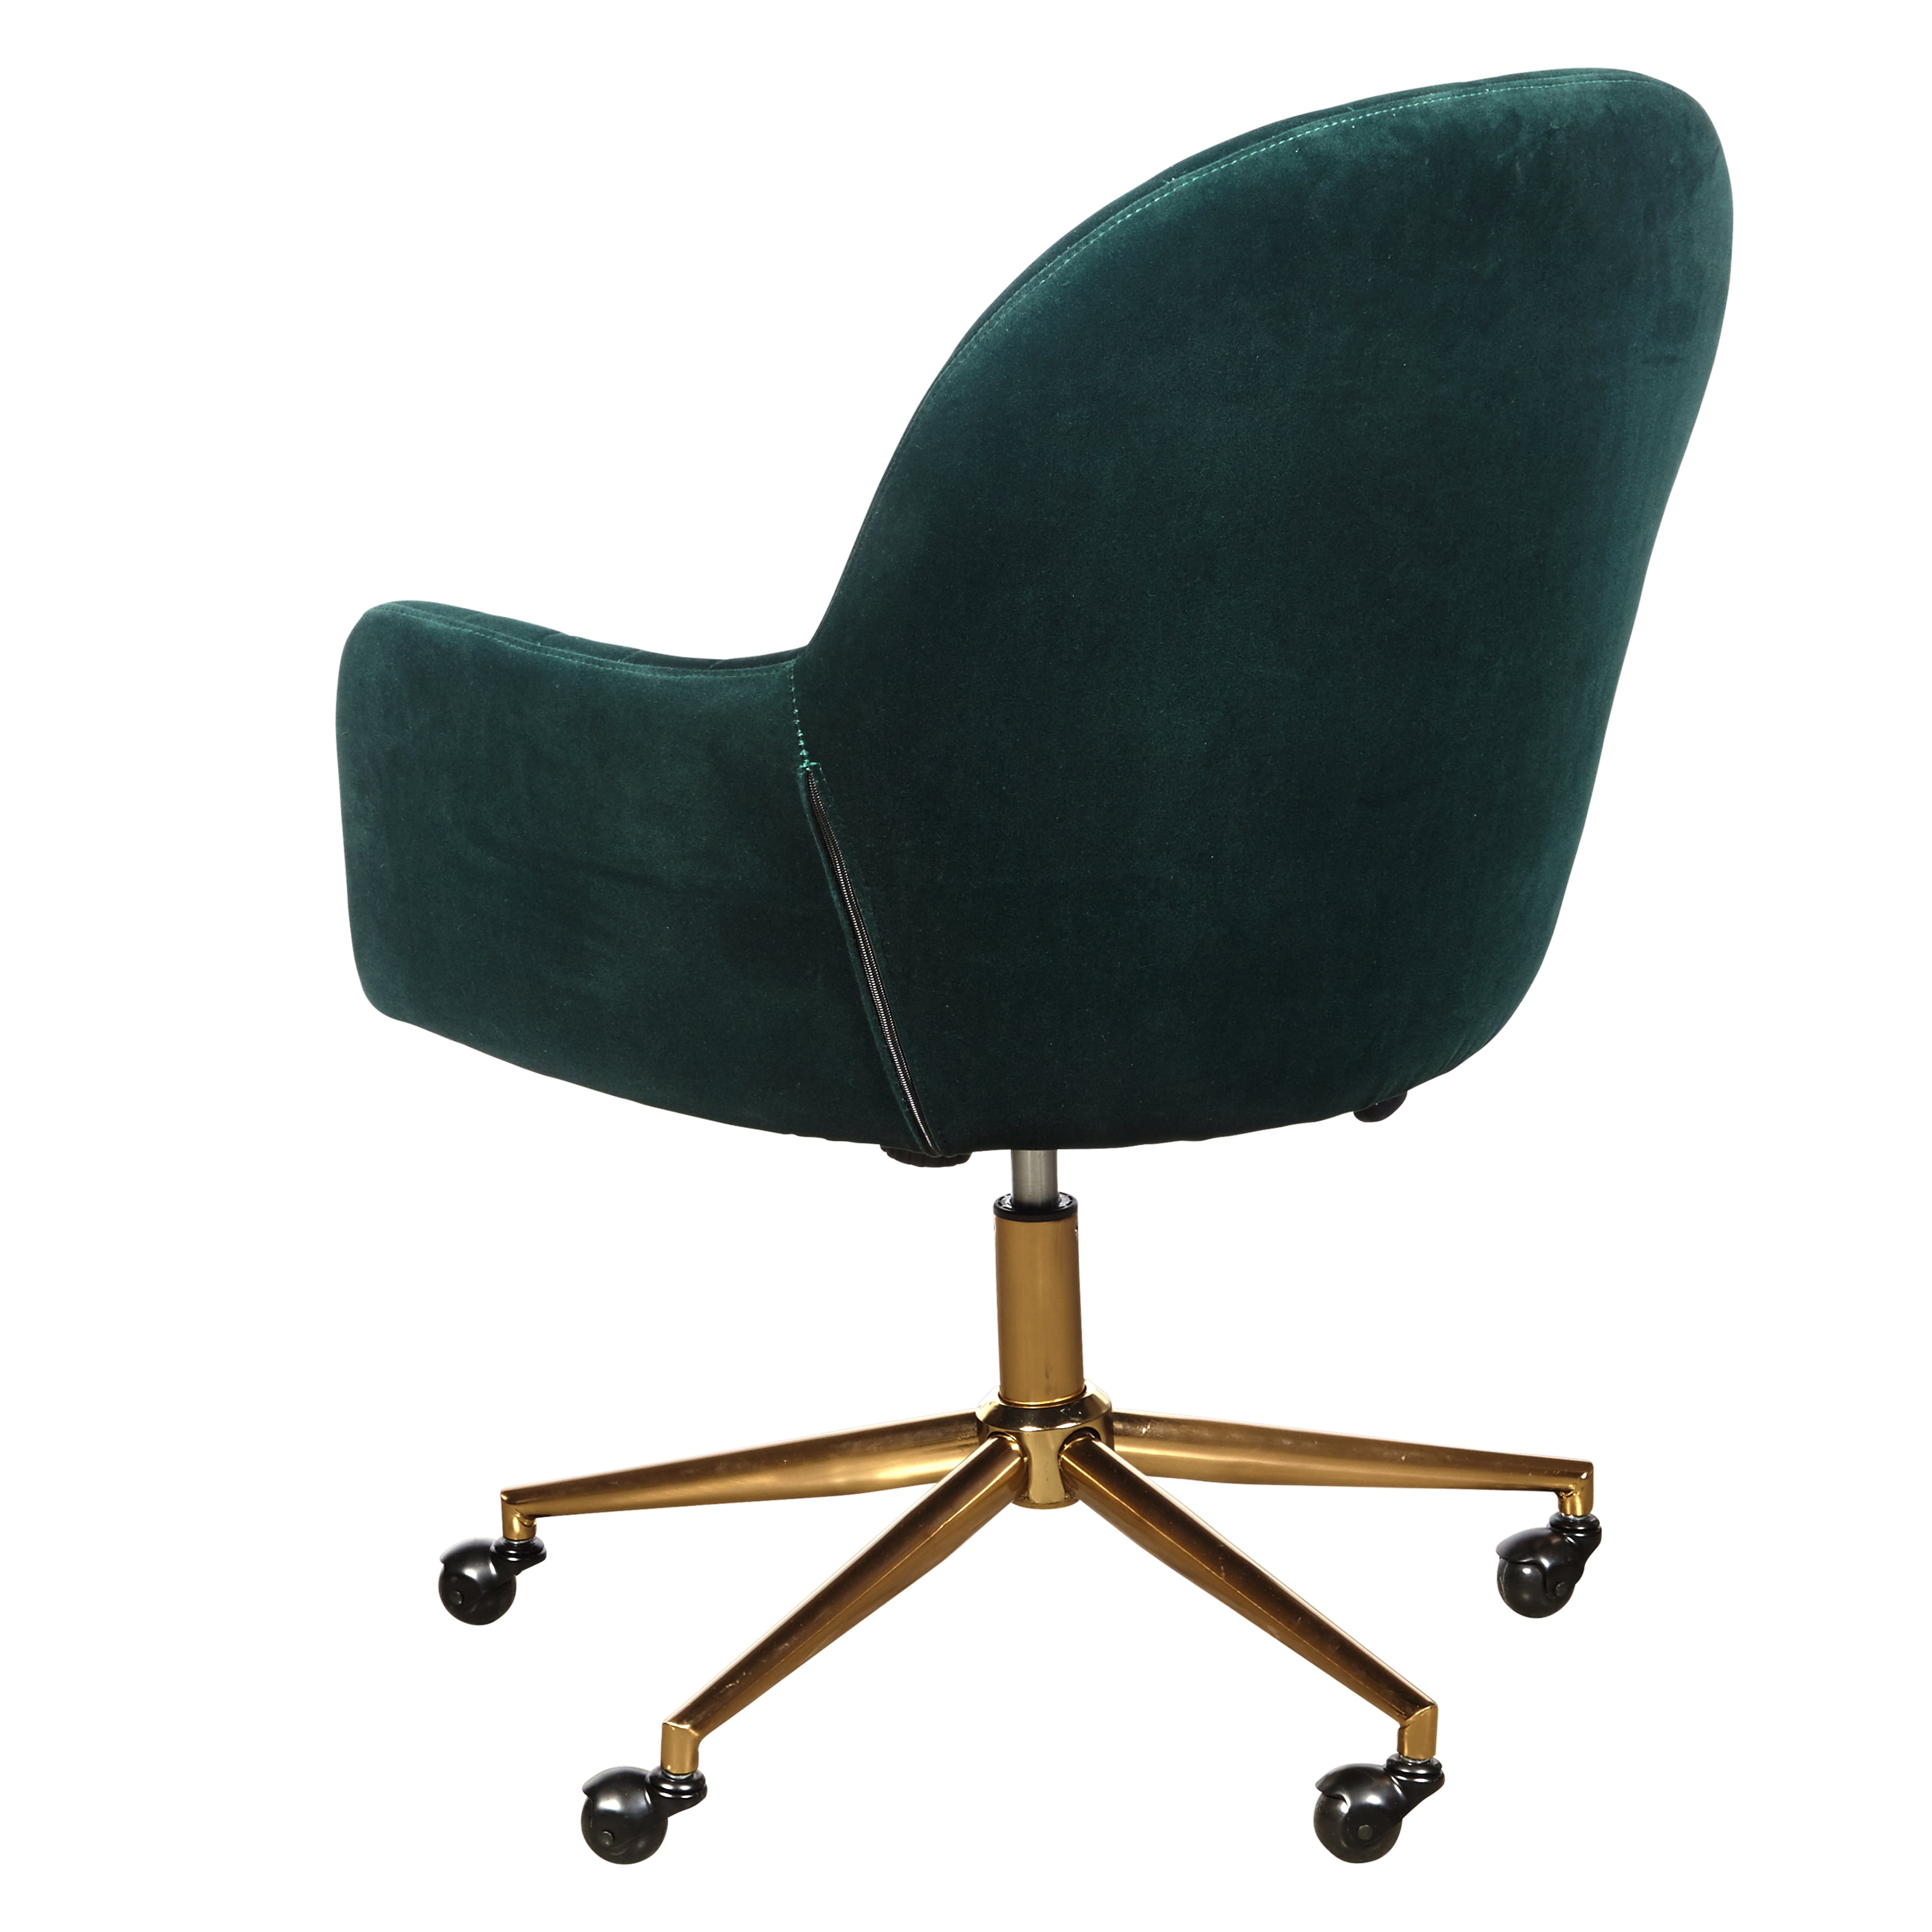 upholstered channel tufted office chair in emerald green velvet